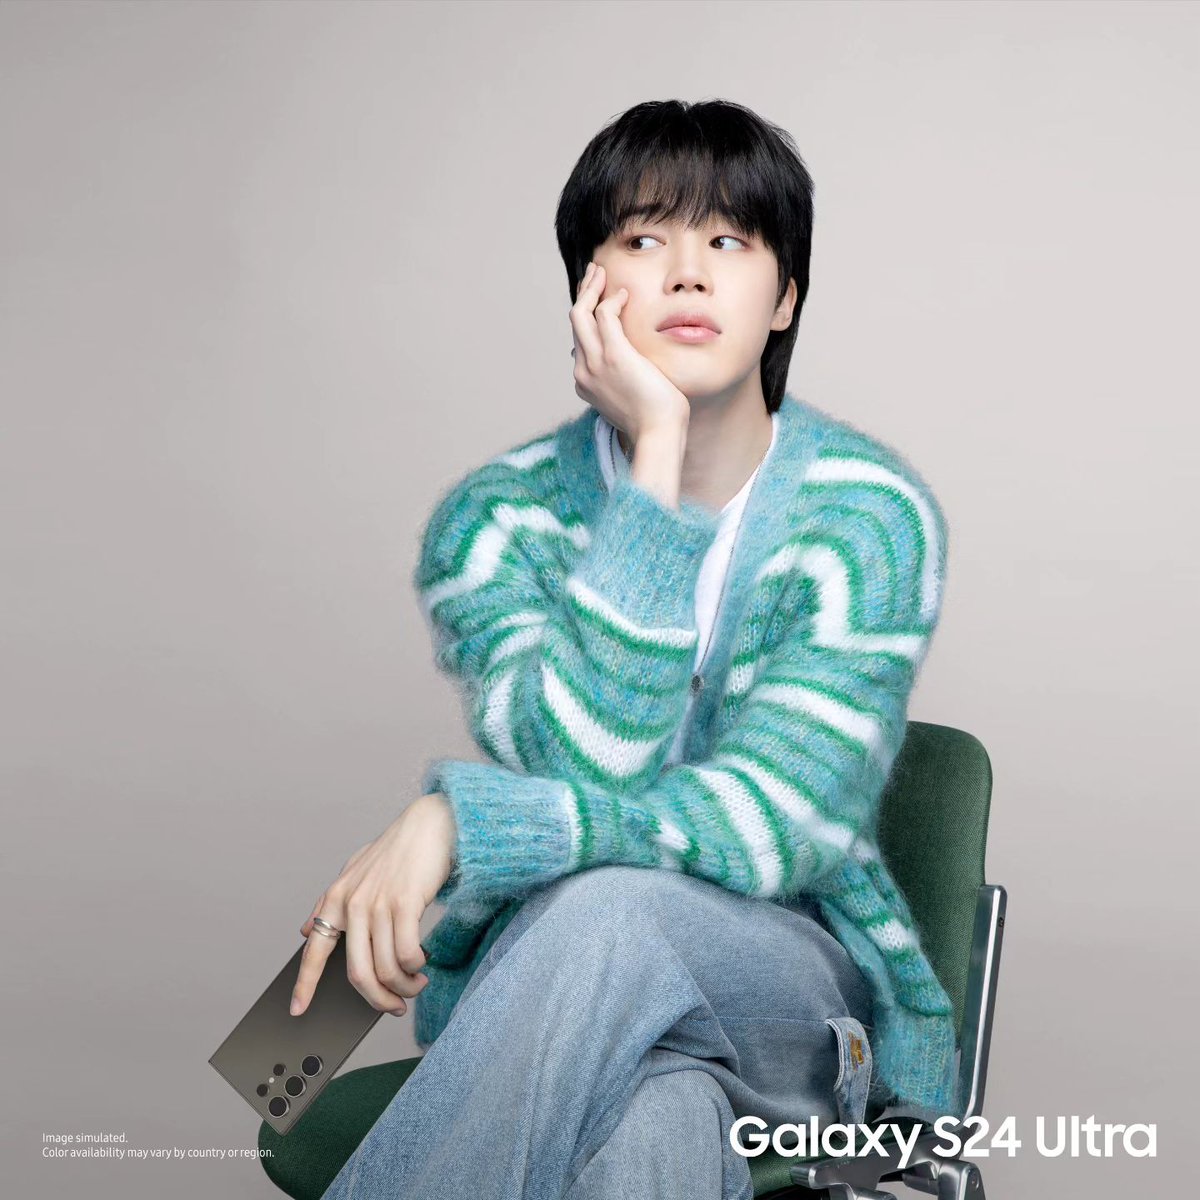 [#INFO] Novas fotos promocionais de #Jimin para a Samsung Mobile promovendo o novo Galaxy S24 Ultra! 💜 @BTS_twt